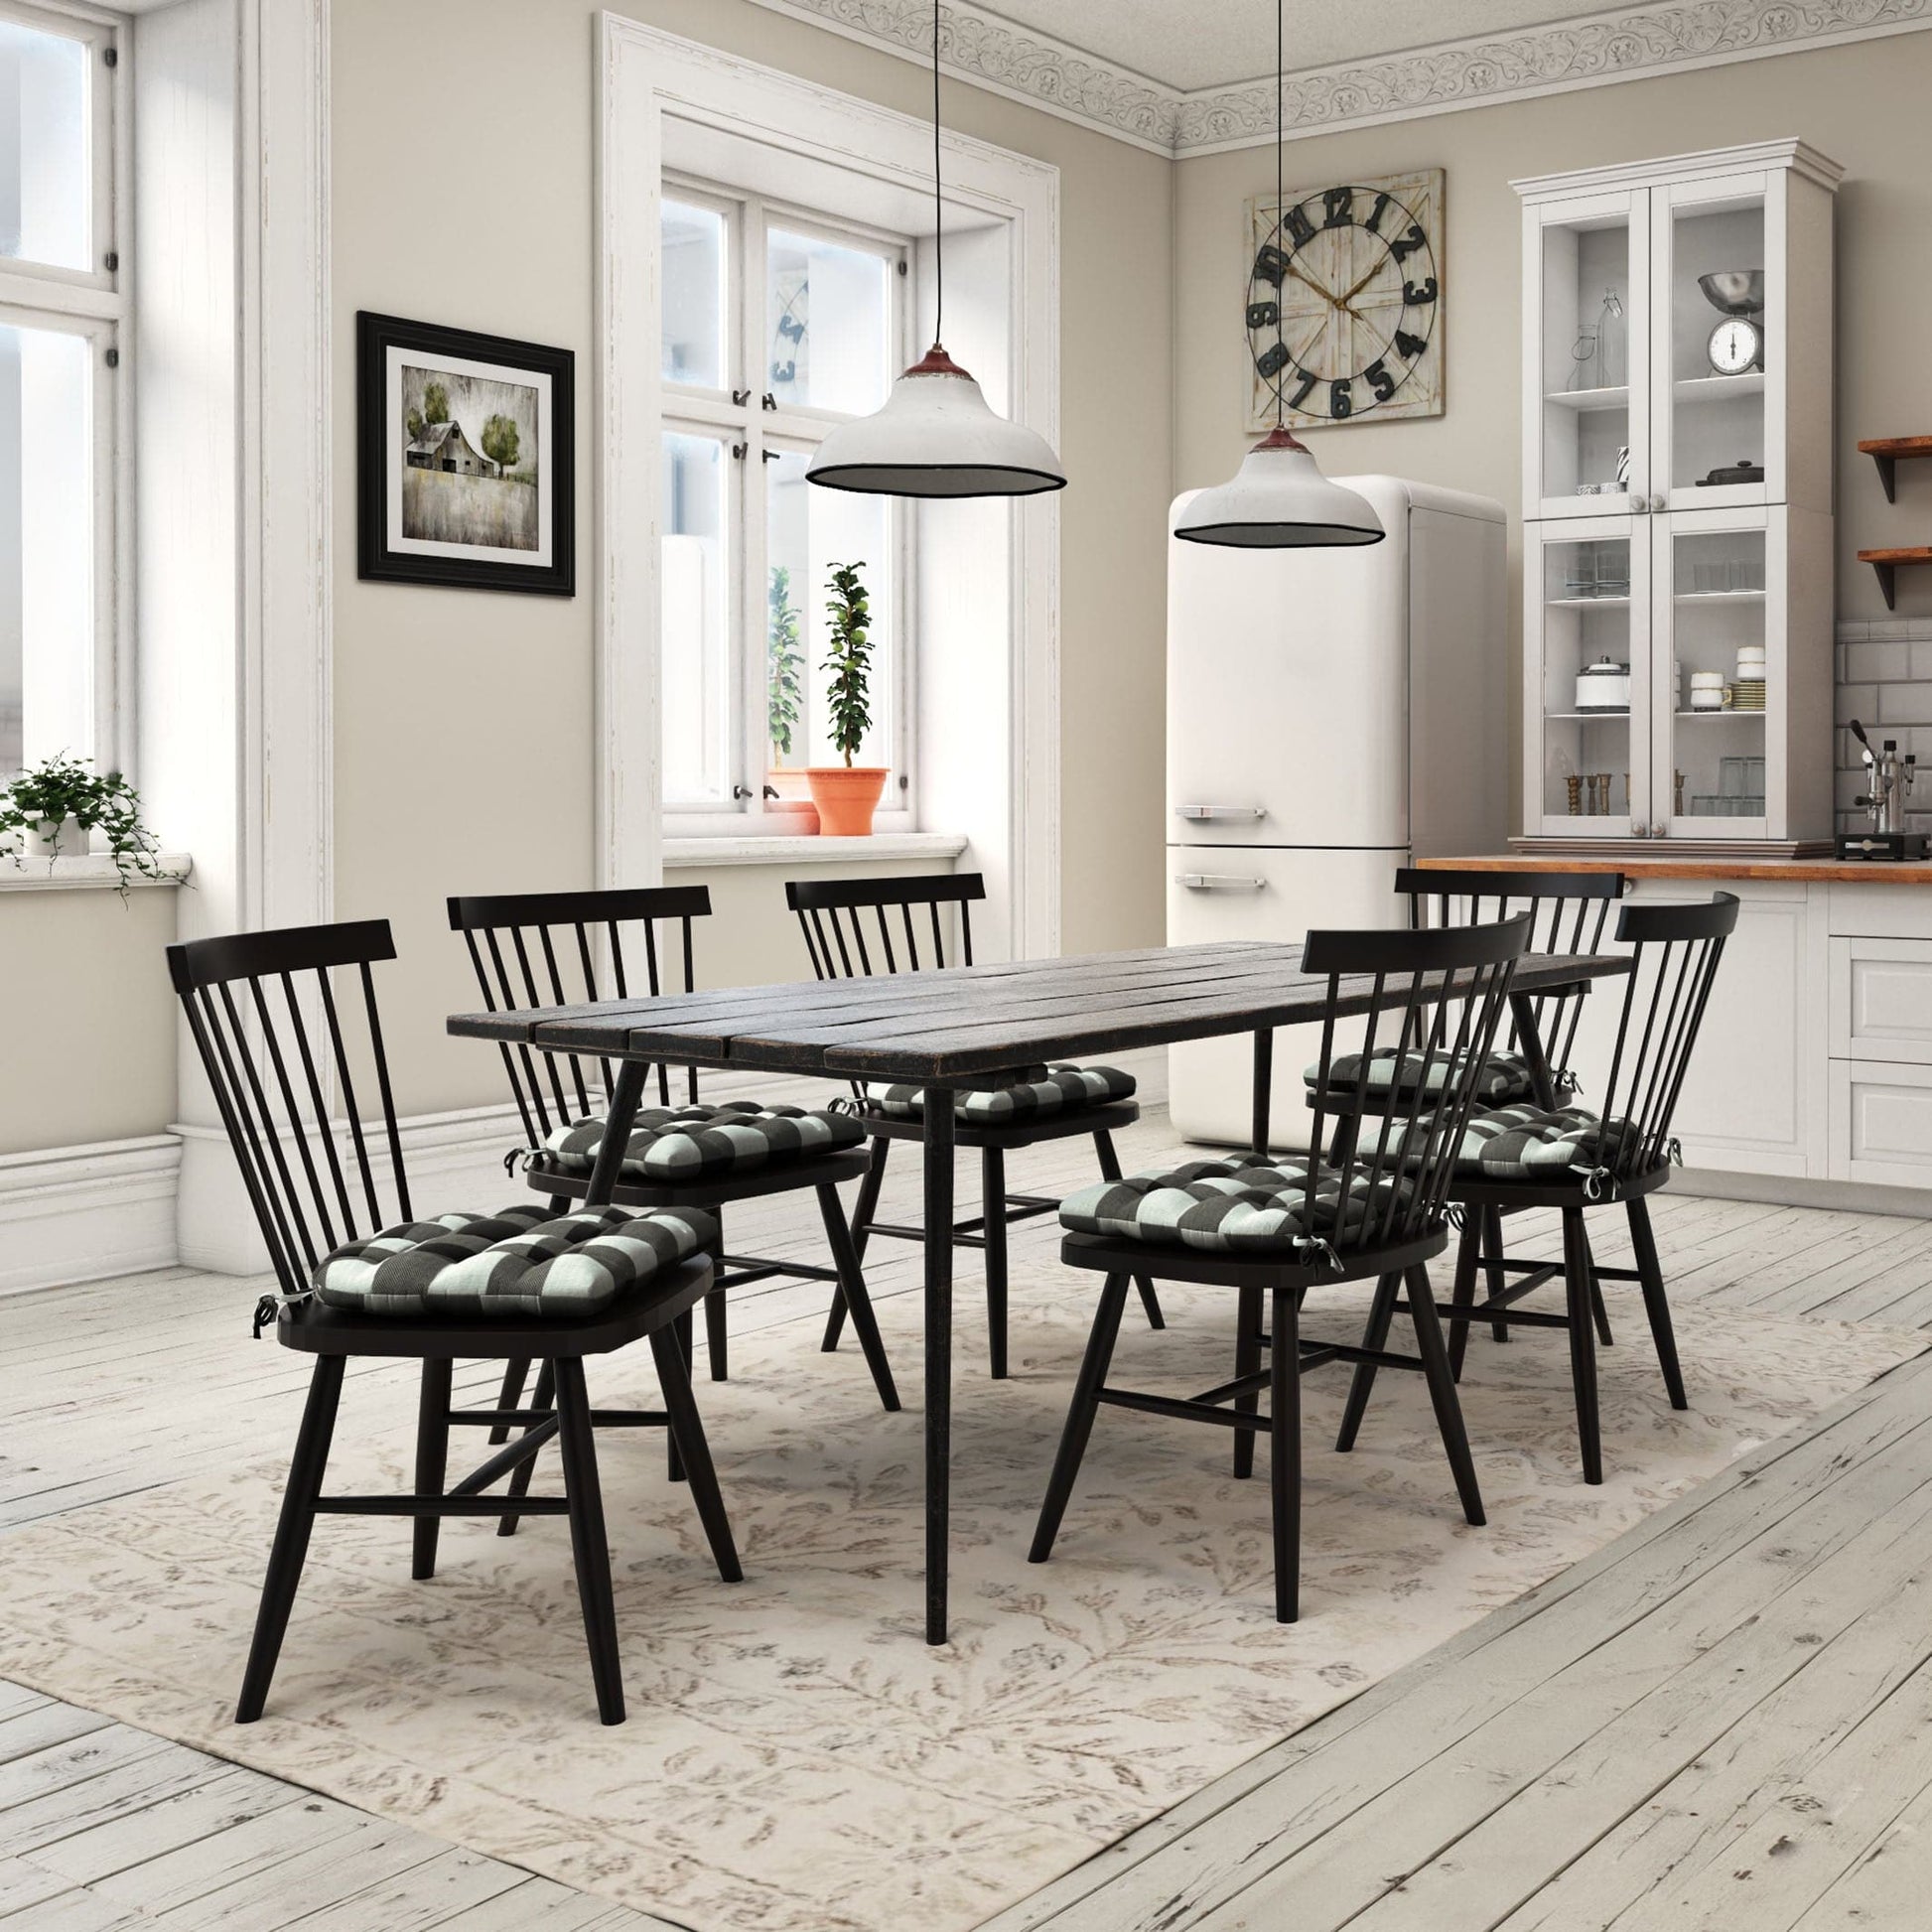 Buffalo Check Black and Grey Dining Chair Cushions- Barnett Home Décor